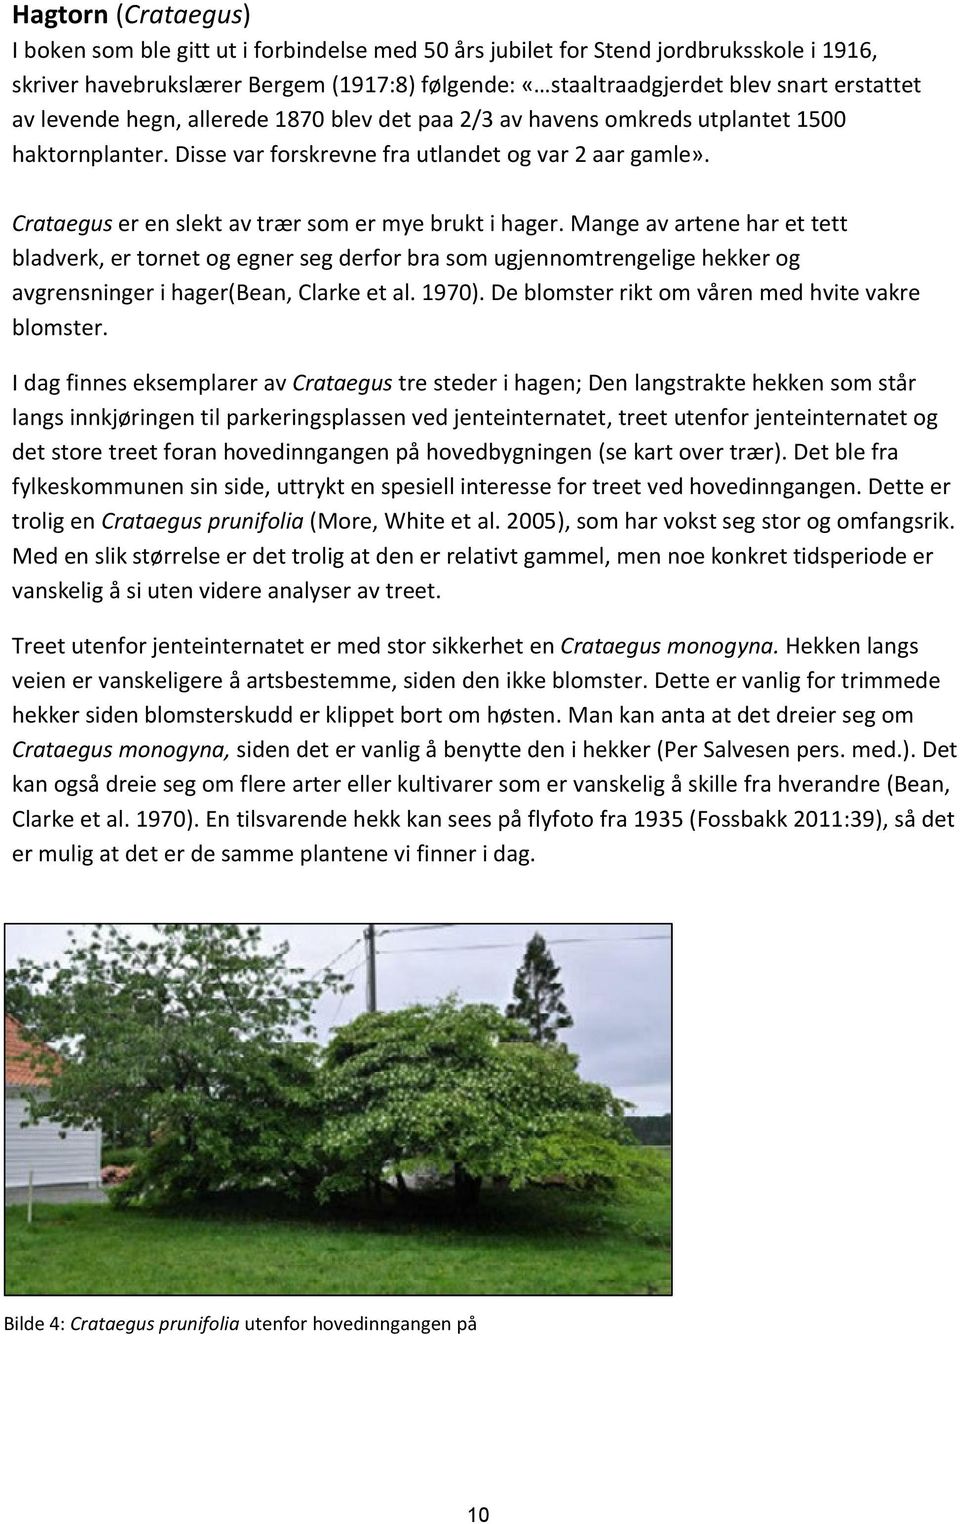 Crataegus er en slekt av trær som er mye brukt i hager.